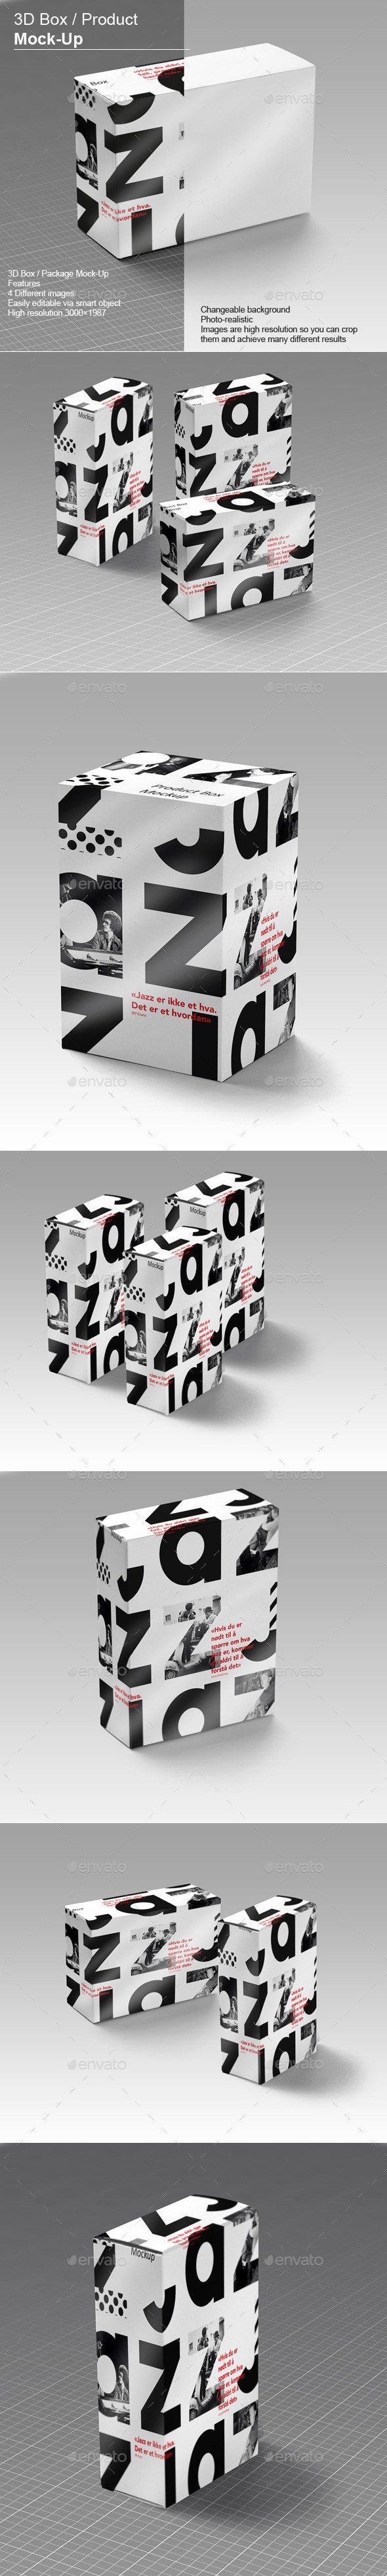 جعبه 3D - موکاپ محصول نسخه 2